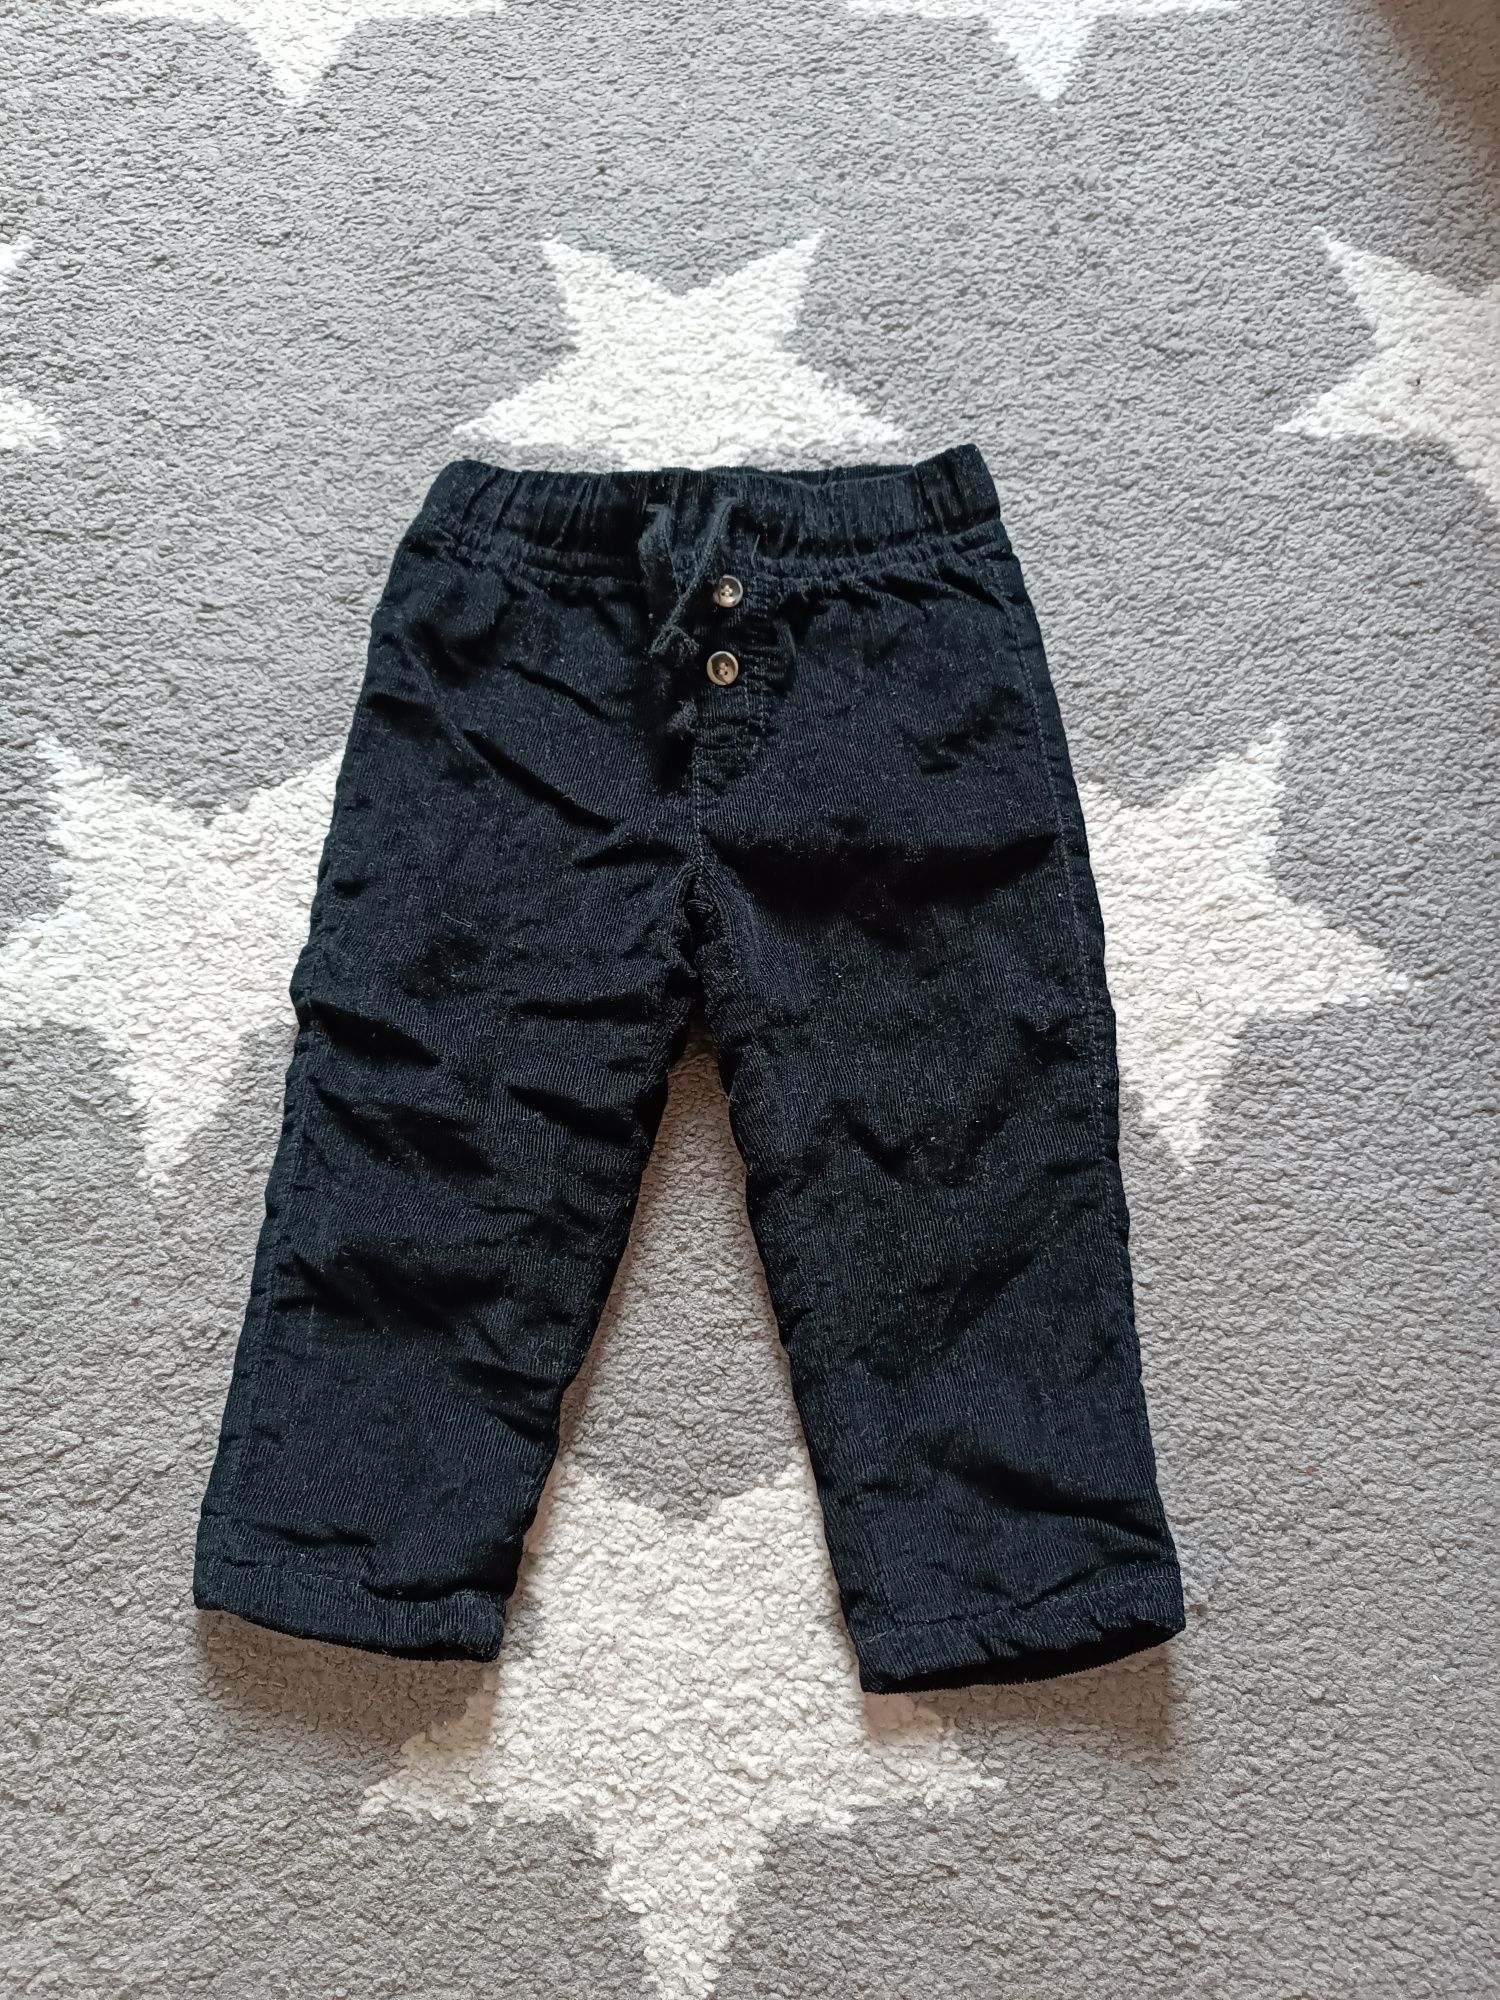 Czarne spodnie dresowe jeansy dresy Sinsay Pepco 80 - 3 szt